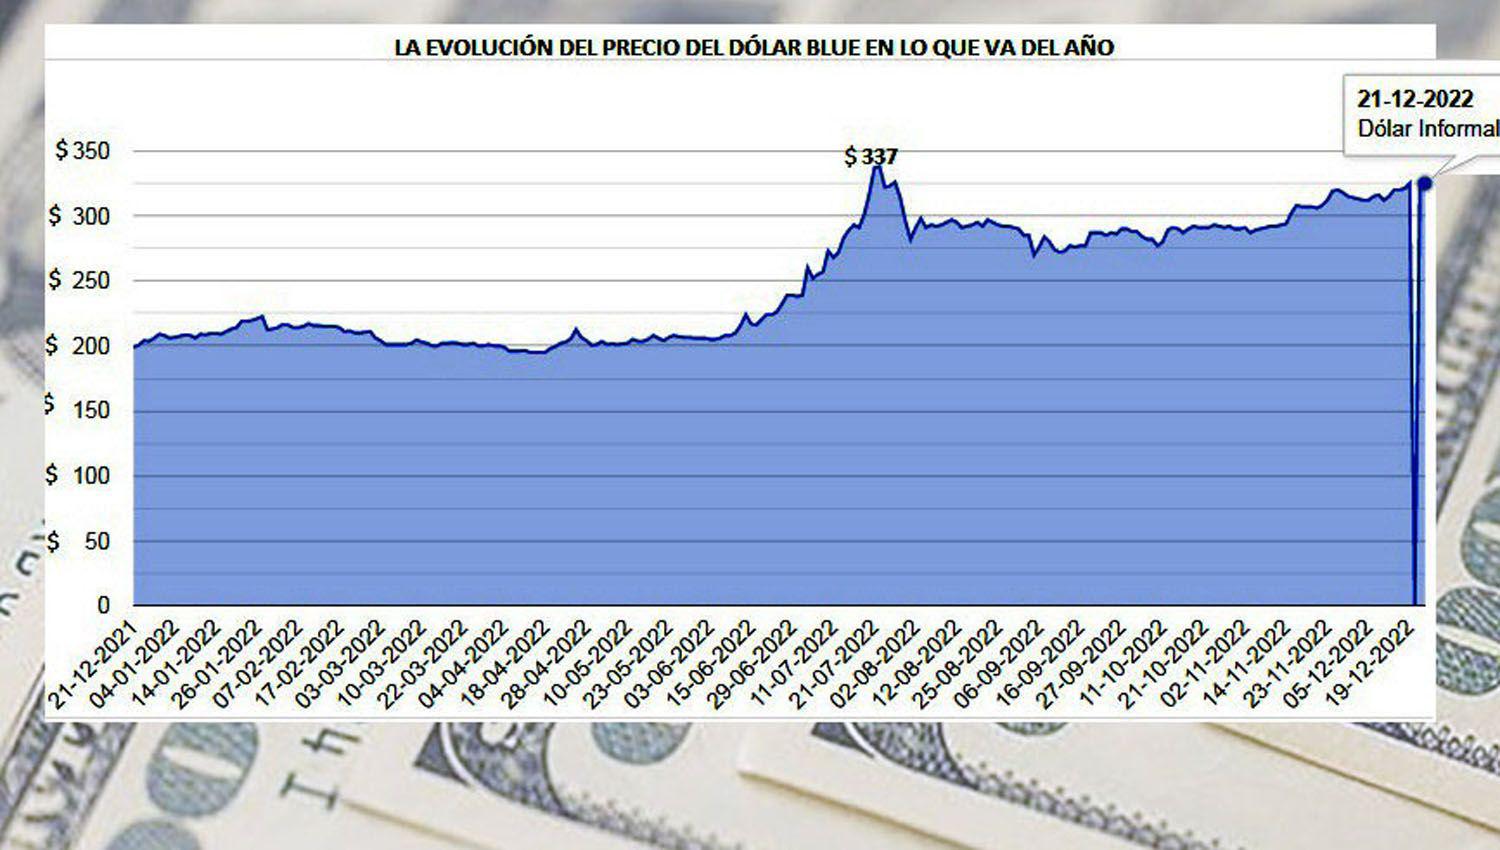 Economistas indican que el precio del blue subiraacute y el piso de los otros doacutelares es 300